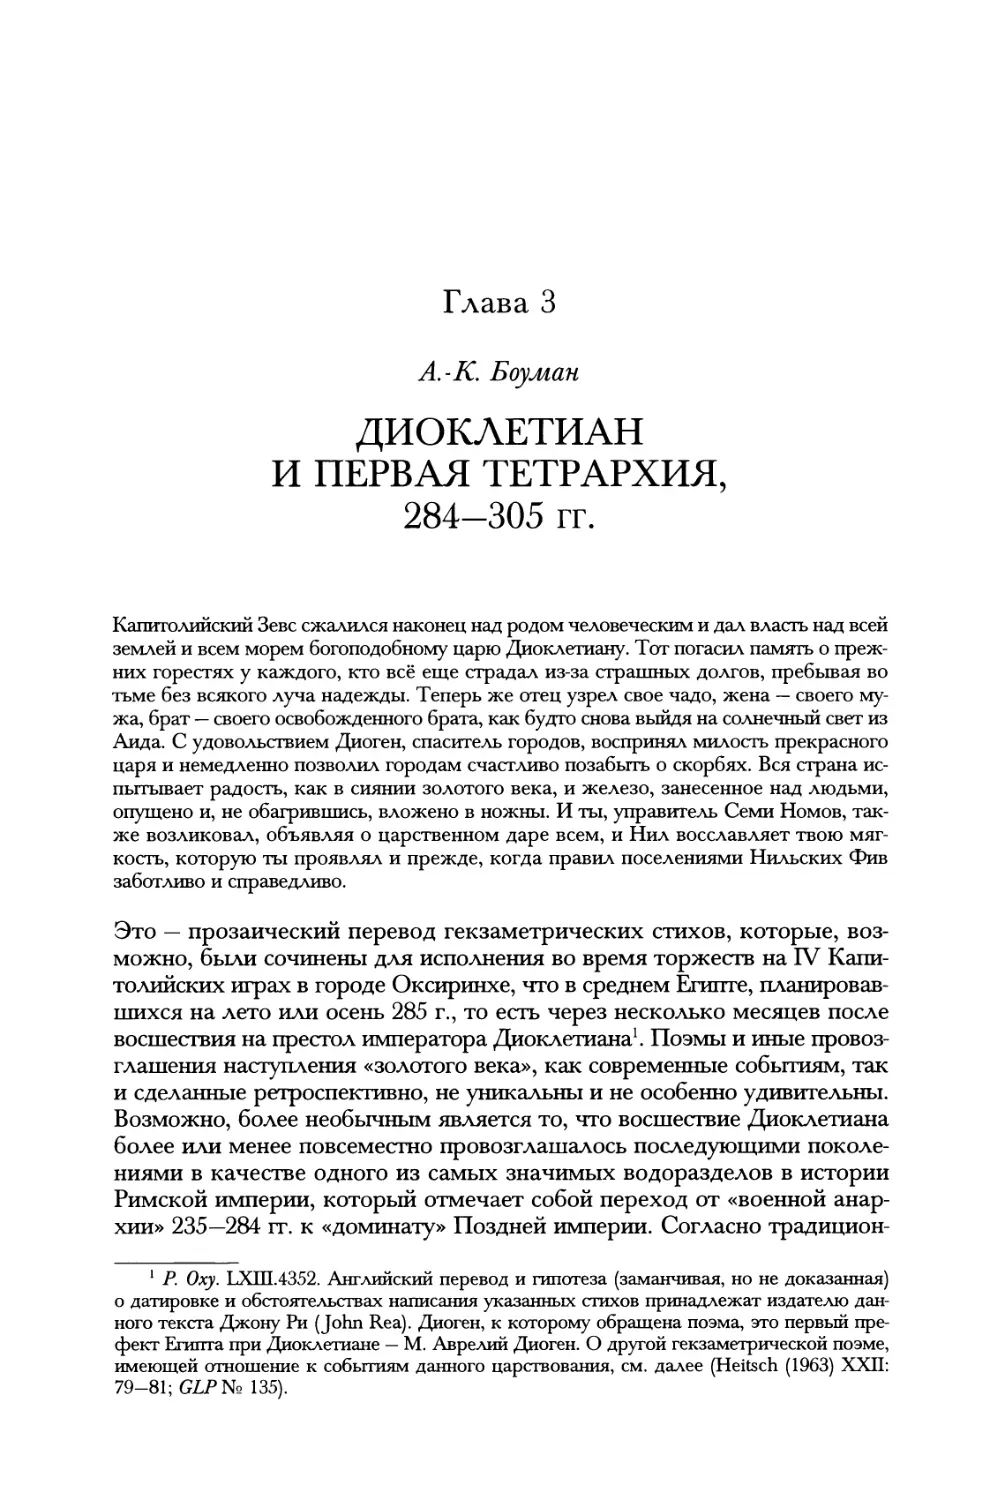 Глава 3. Диоклетиан и первая тетрархия, 284—305 гг. А.-К. Боуман